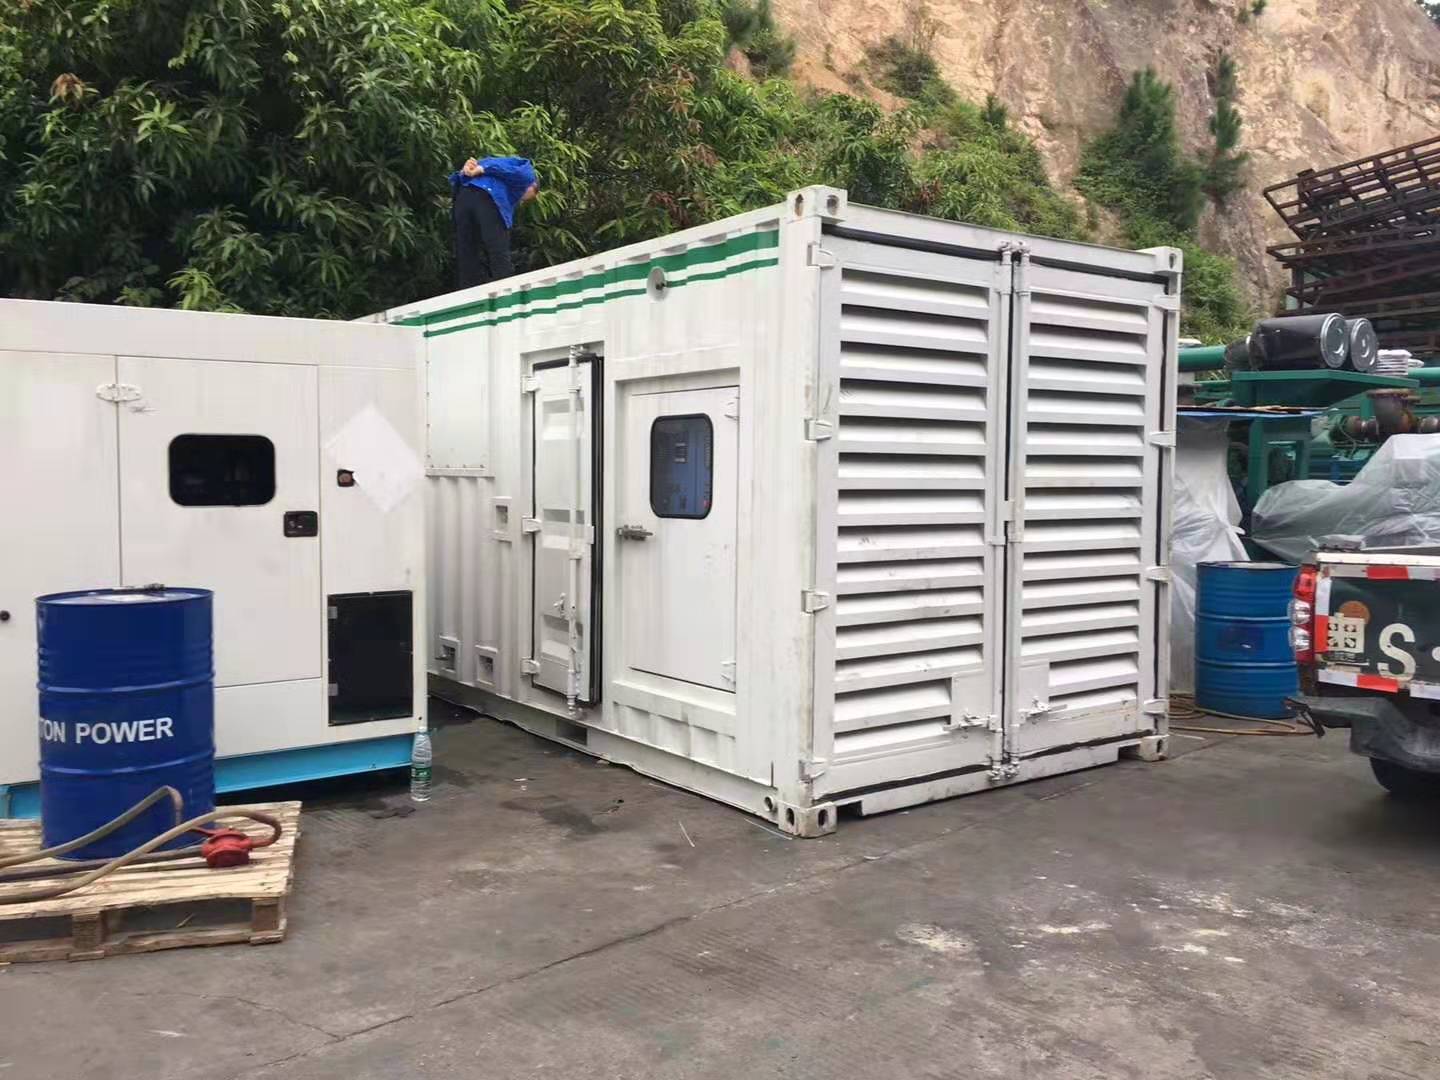 广东惠食佳经济发展有限公司好望洋分店租用一台低噪音型柴油发电机组